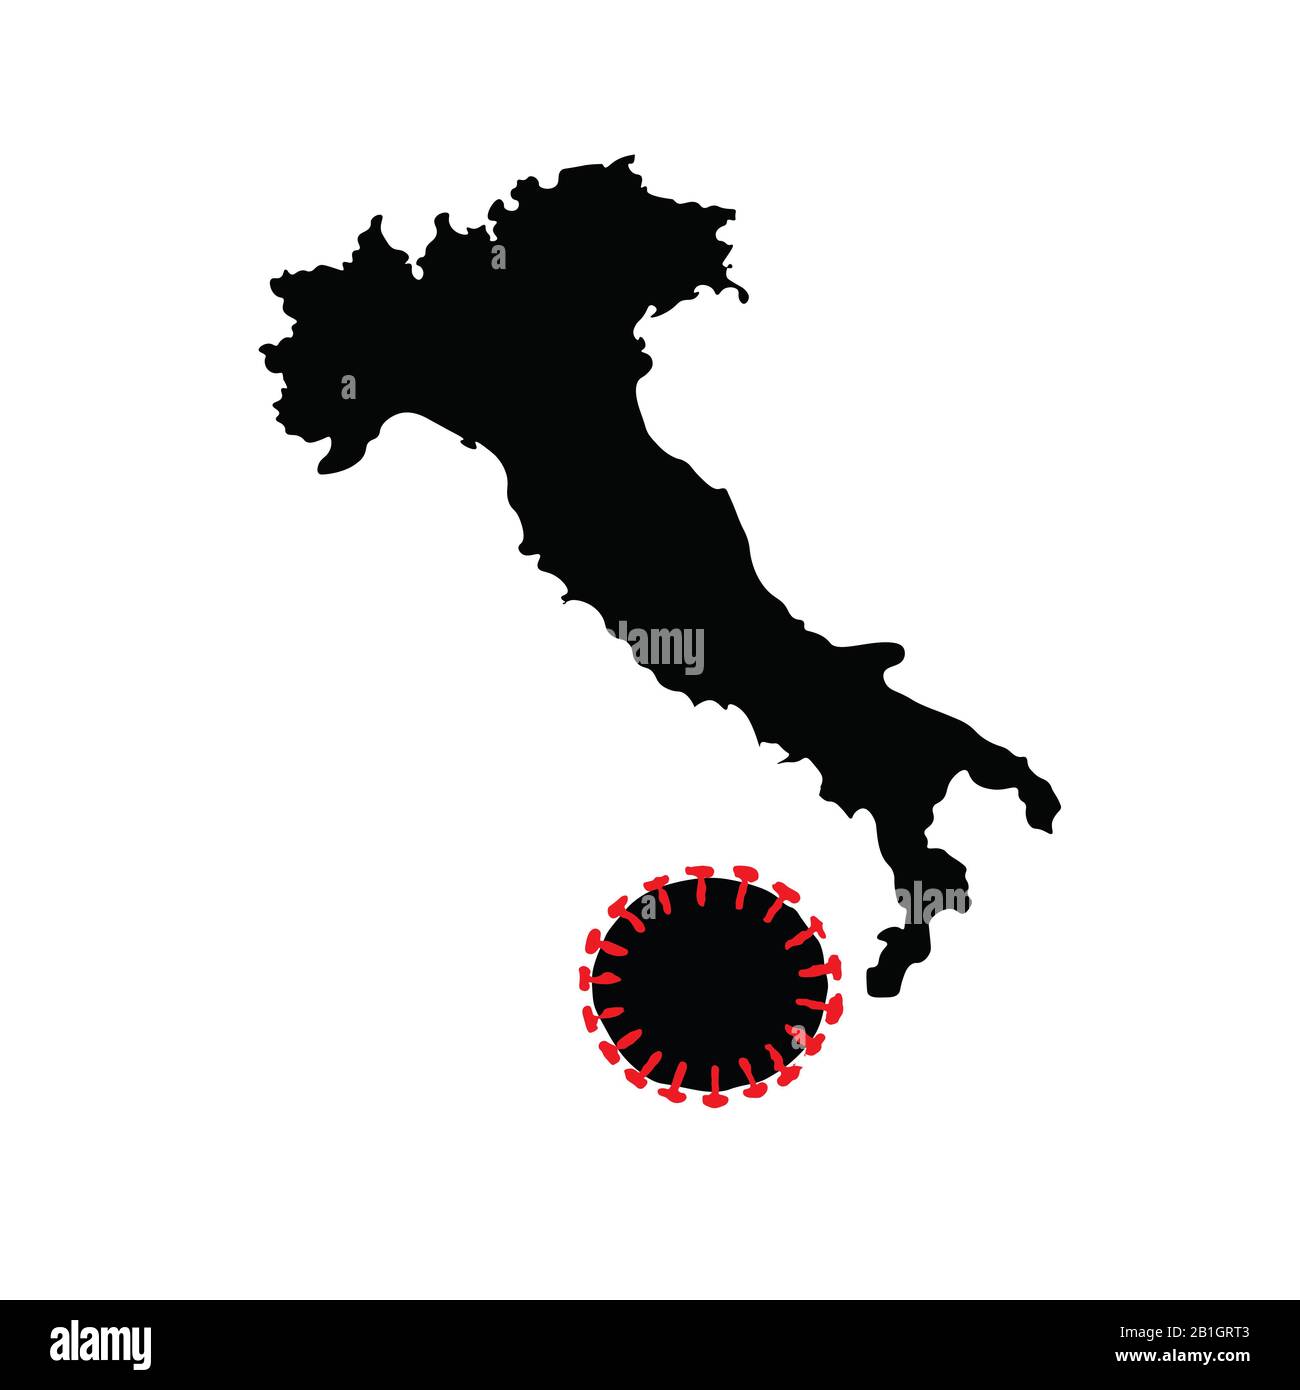 Italien kämpft gegen Coronavirus. Silhouette der italienischen Karte in Form eines Stiefels, der den Corona-Virus-förmigen Ball tritt. Konzept Rasterdarstellung. Stockfoto